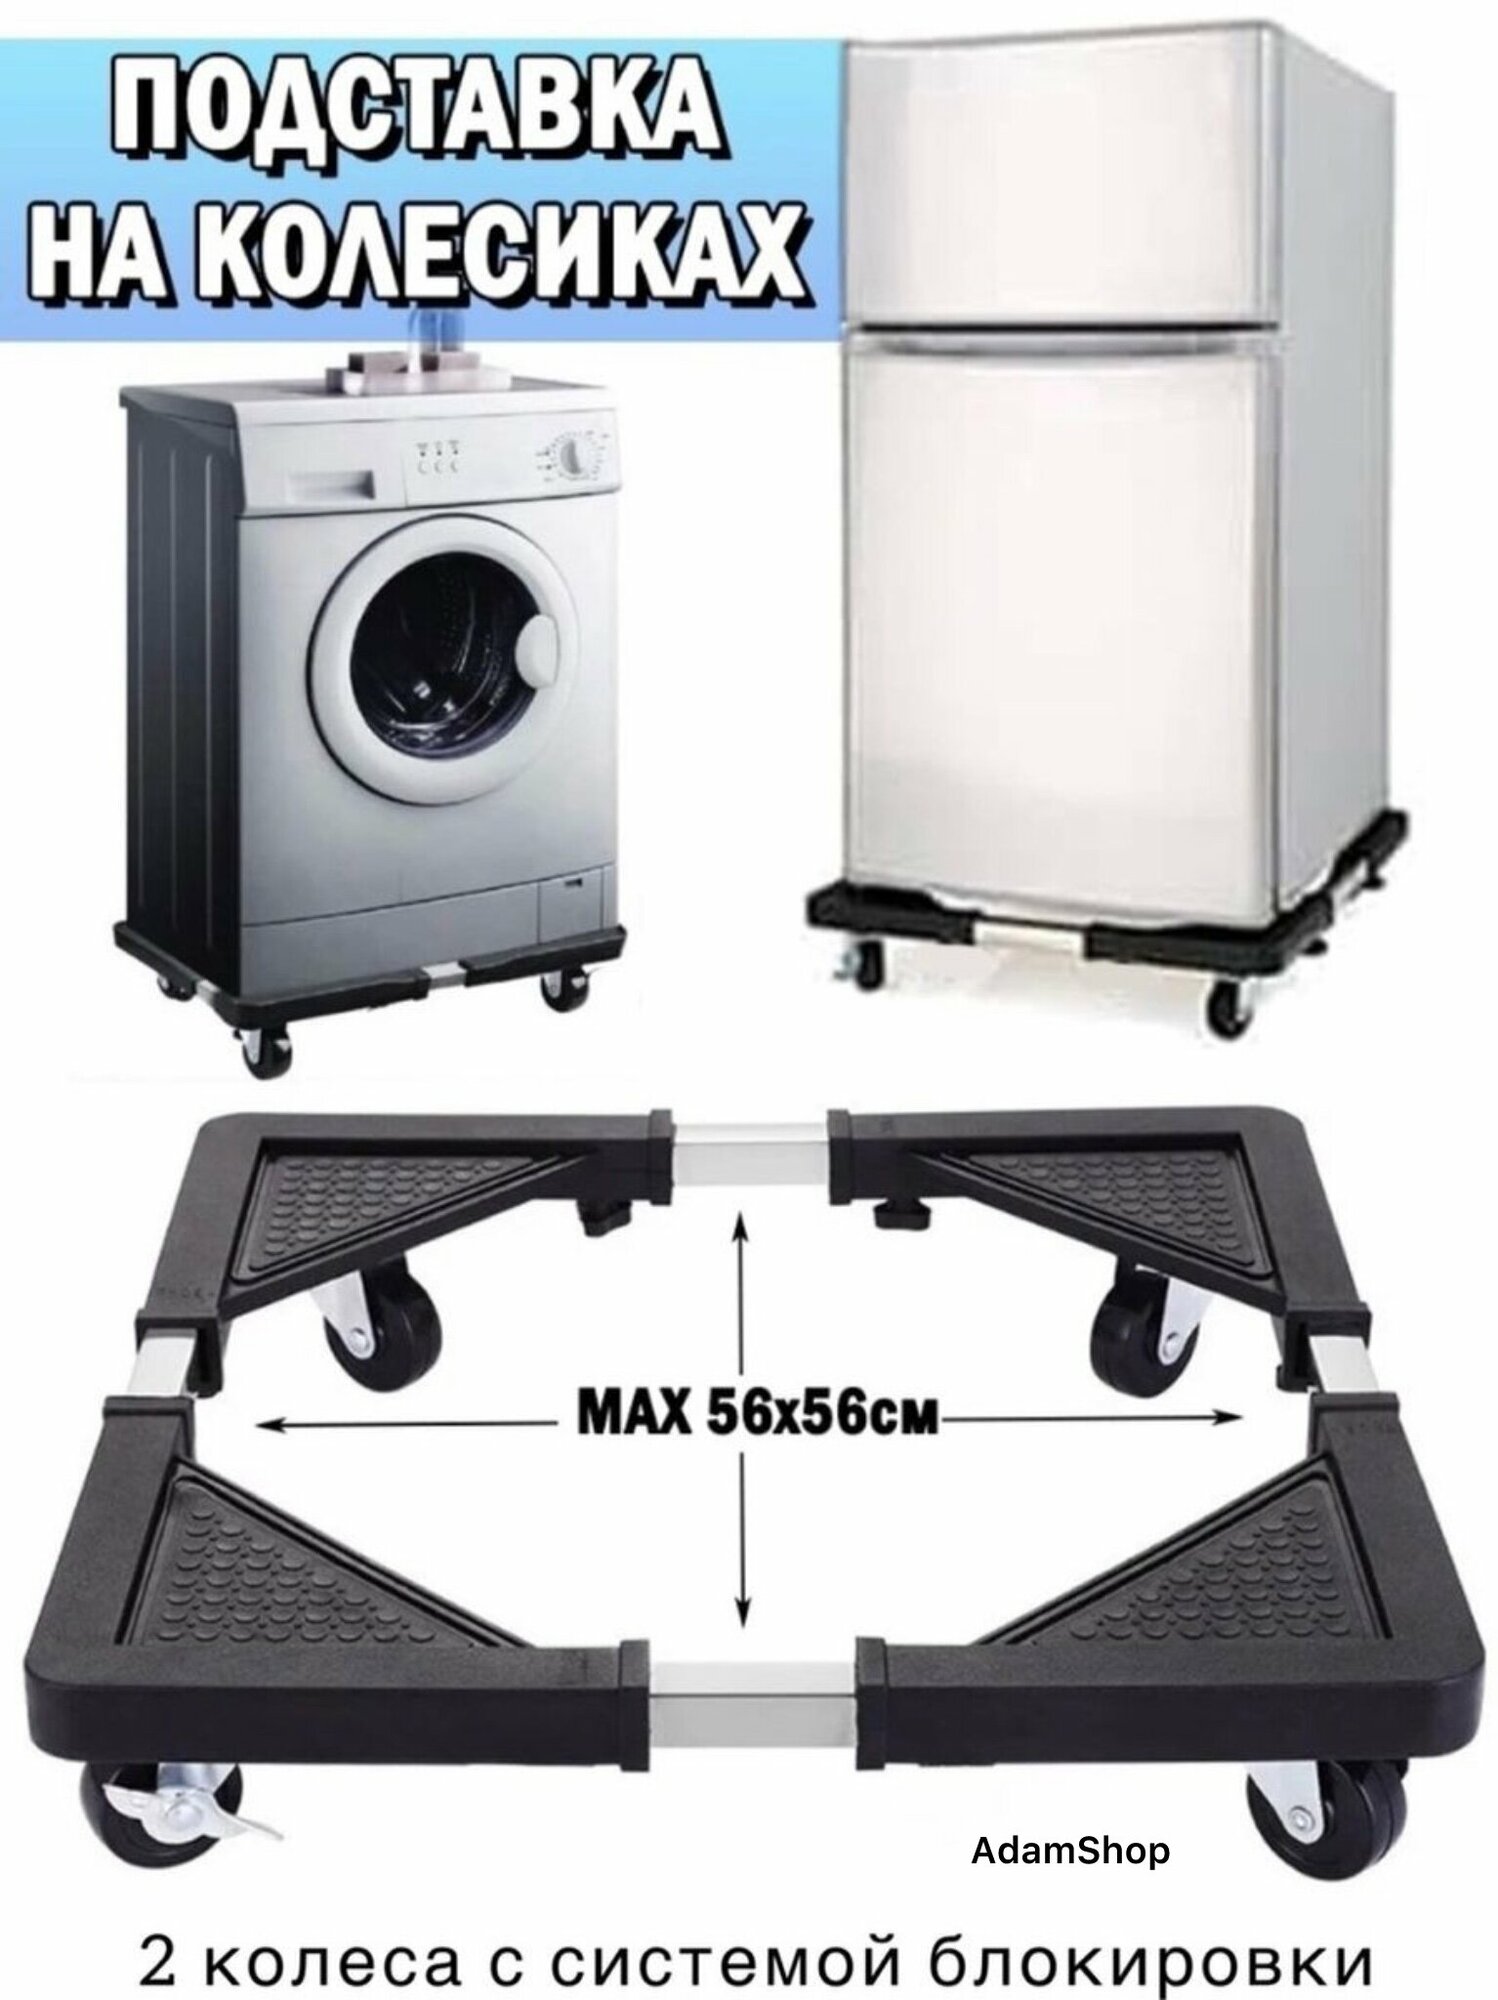 Подставка для техники на колесиках, Подставка под стиральную машину, холодильник